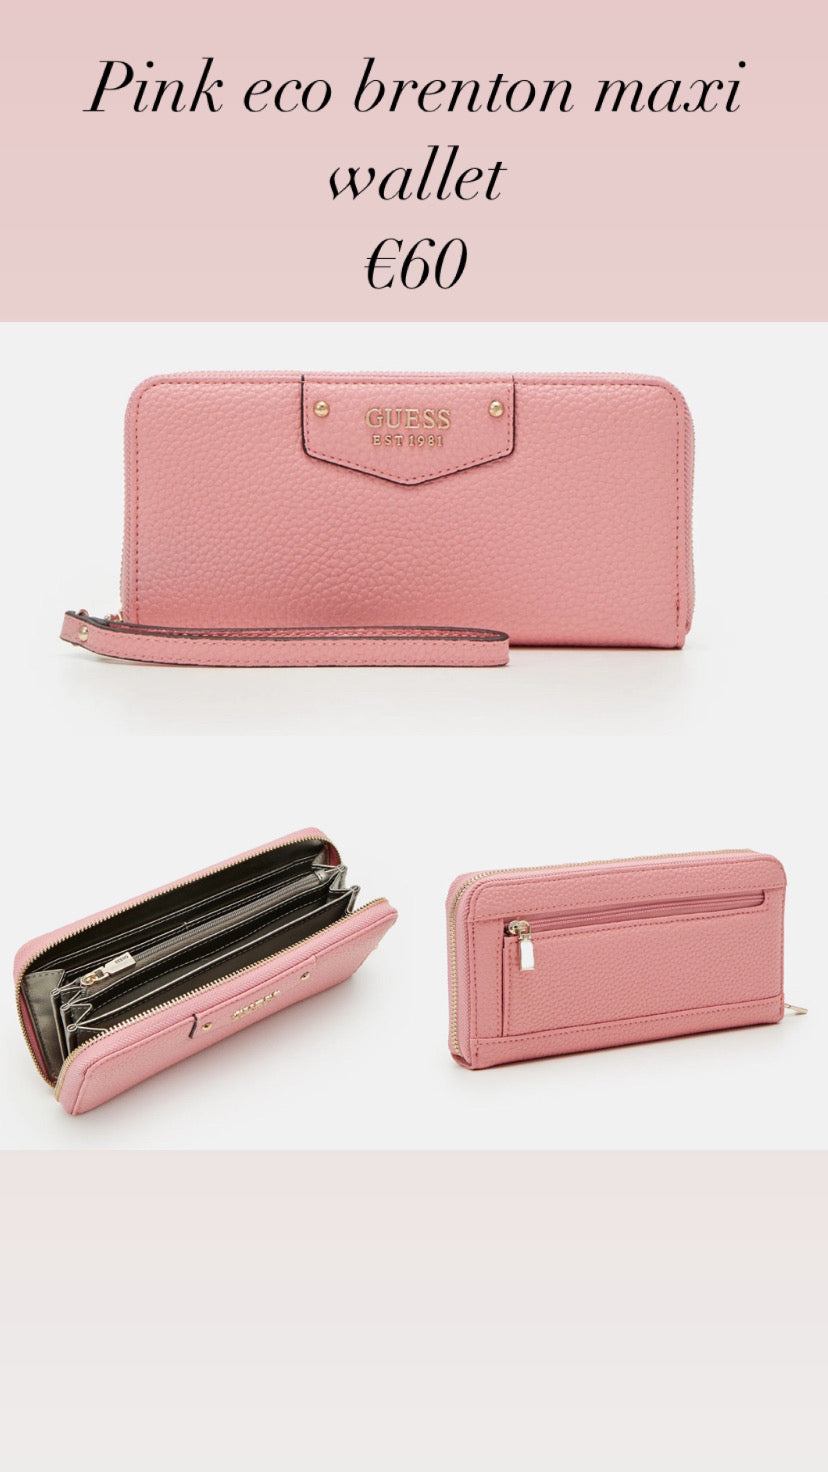 Pink eco brenton maxi wallet